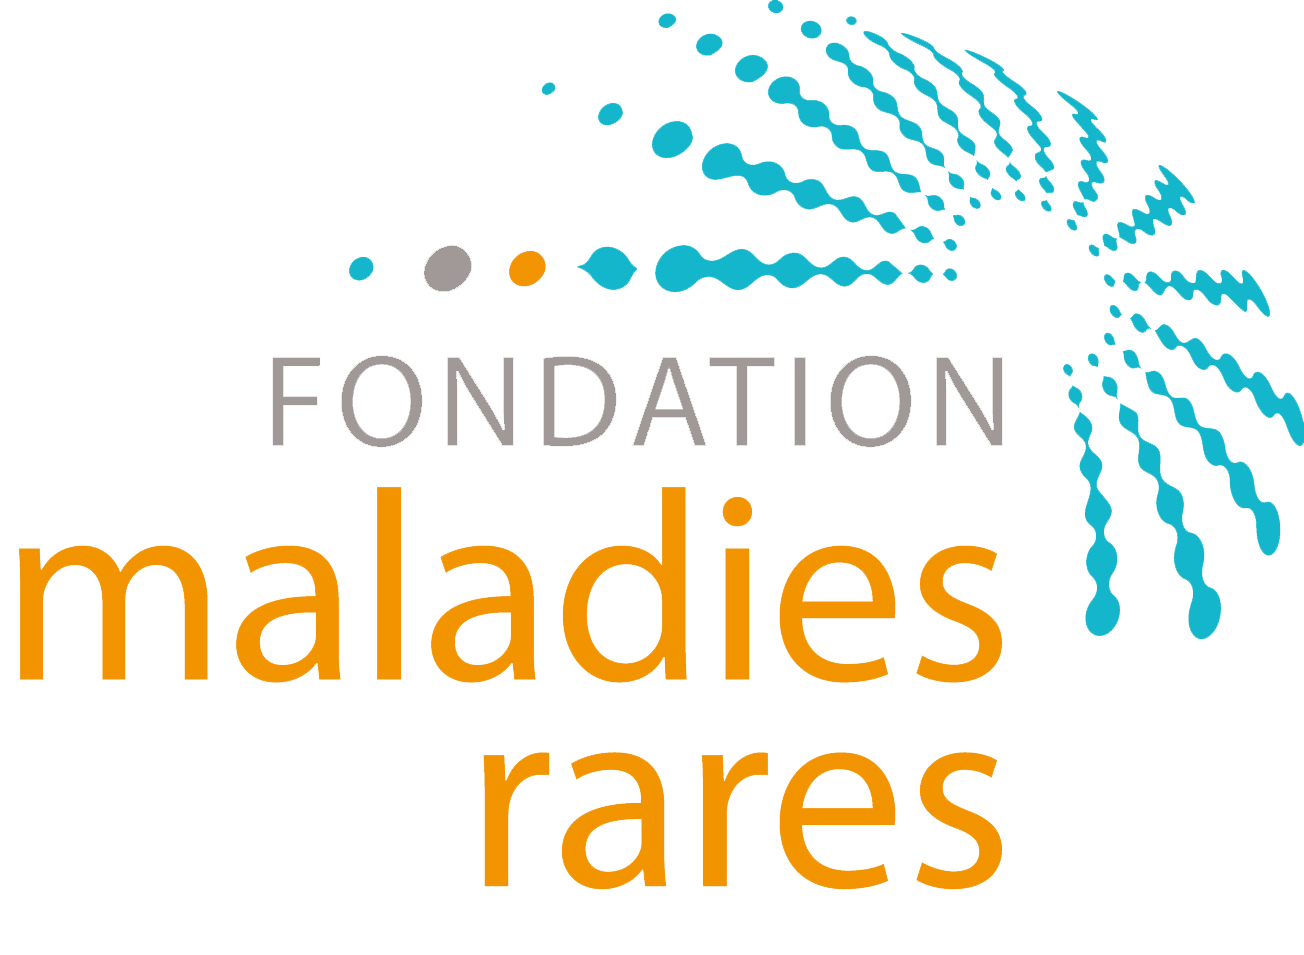 Fondation Maladies Rares - Ensemble, trouvons des traitements !